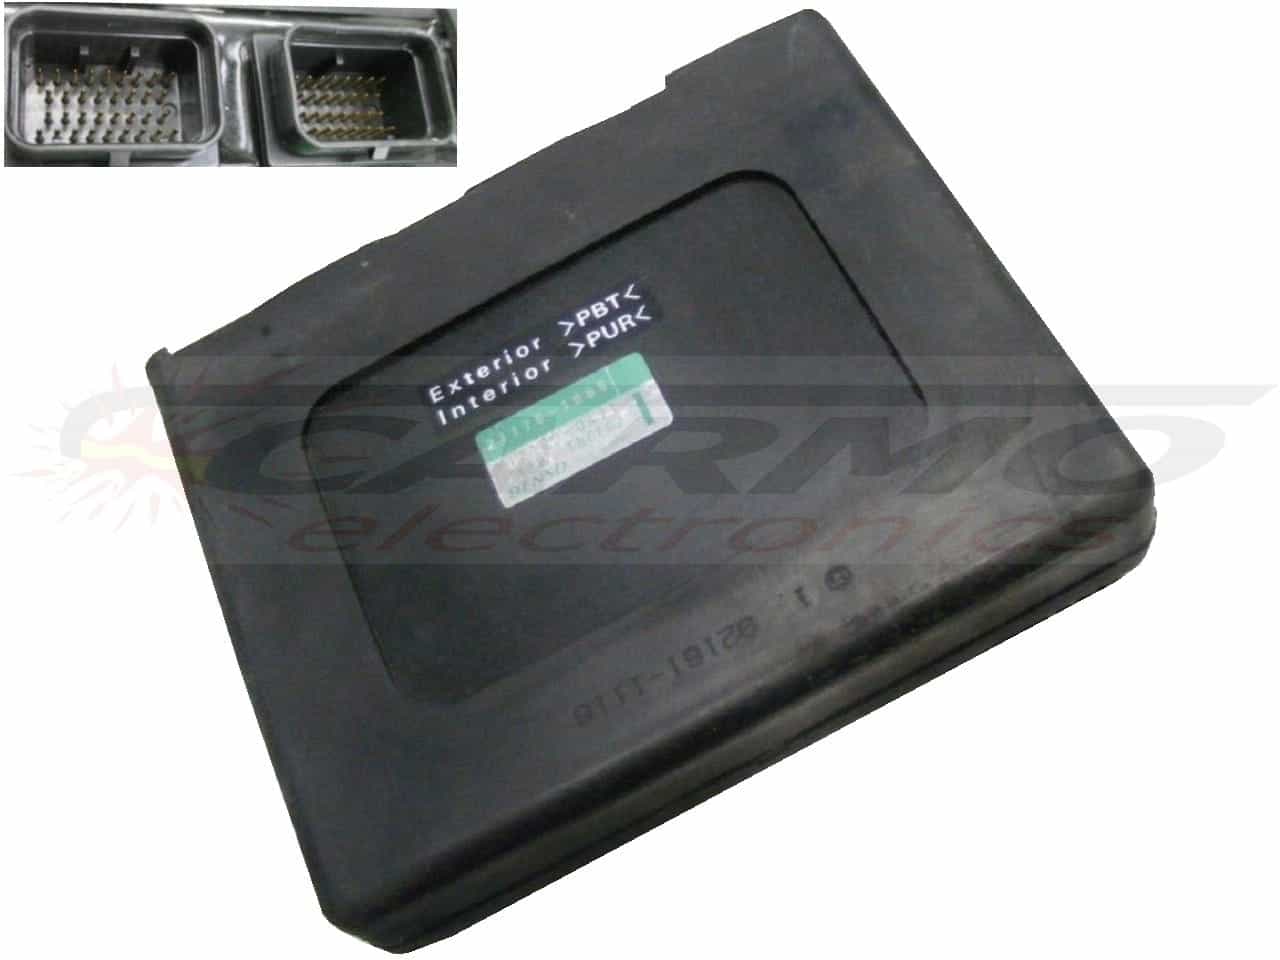 ZX12 (1200) Ninja CDI ECU (21175-1068) ECM black box